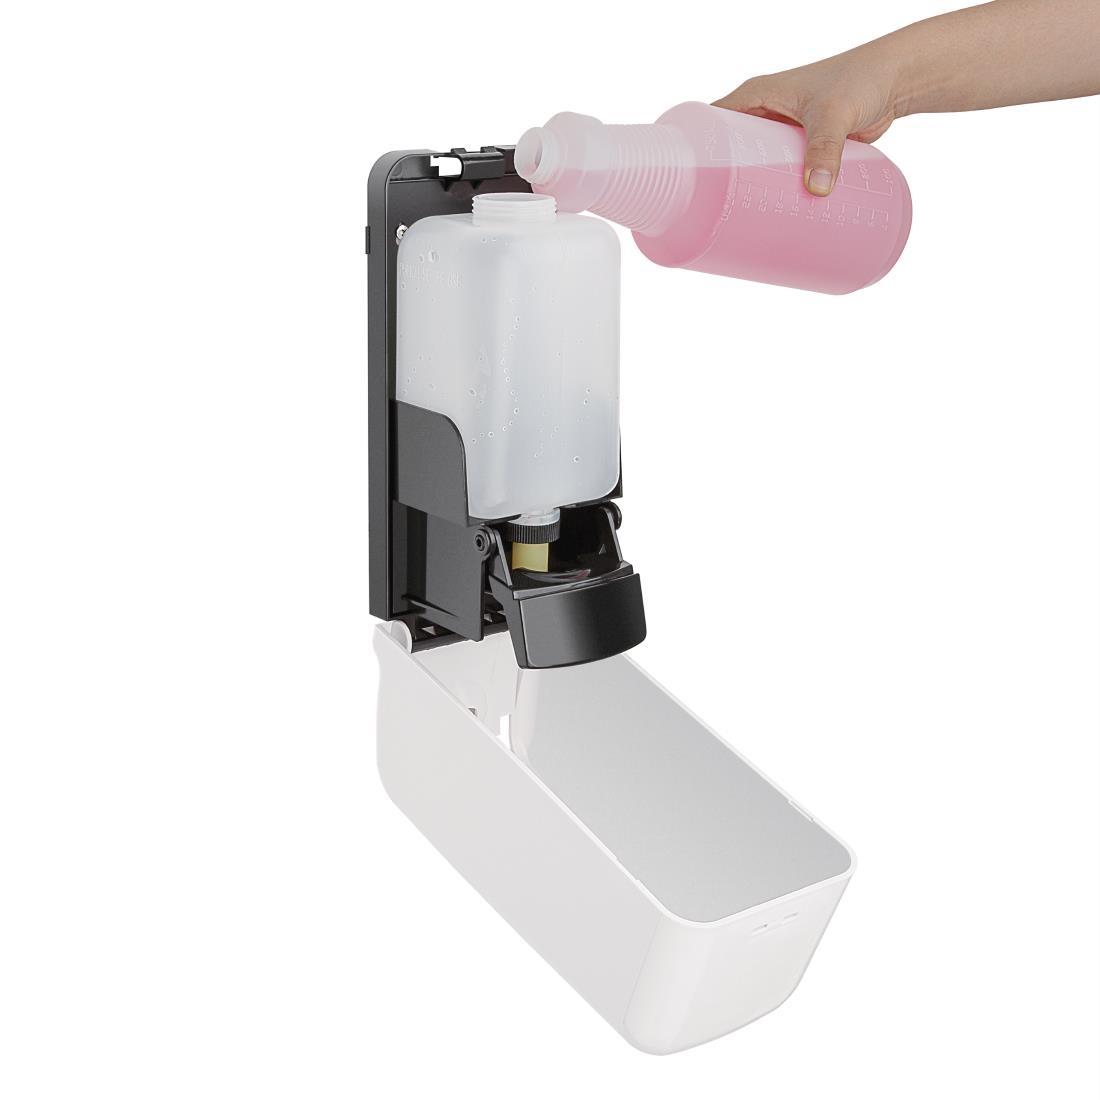 Jantex Liquid Soap and Hand Sanitiser Dispenser 1Ltr - FK385  - 4